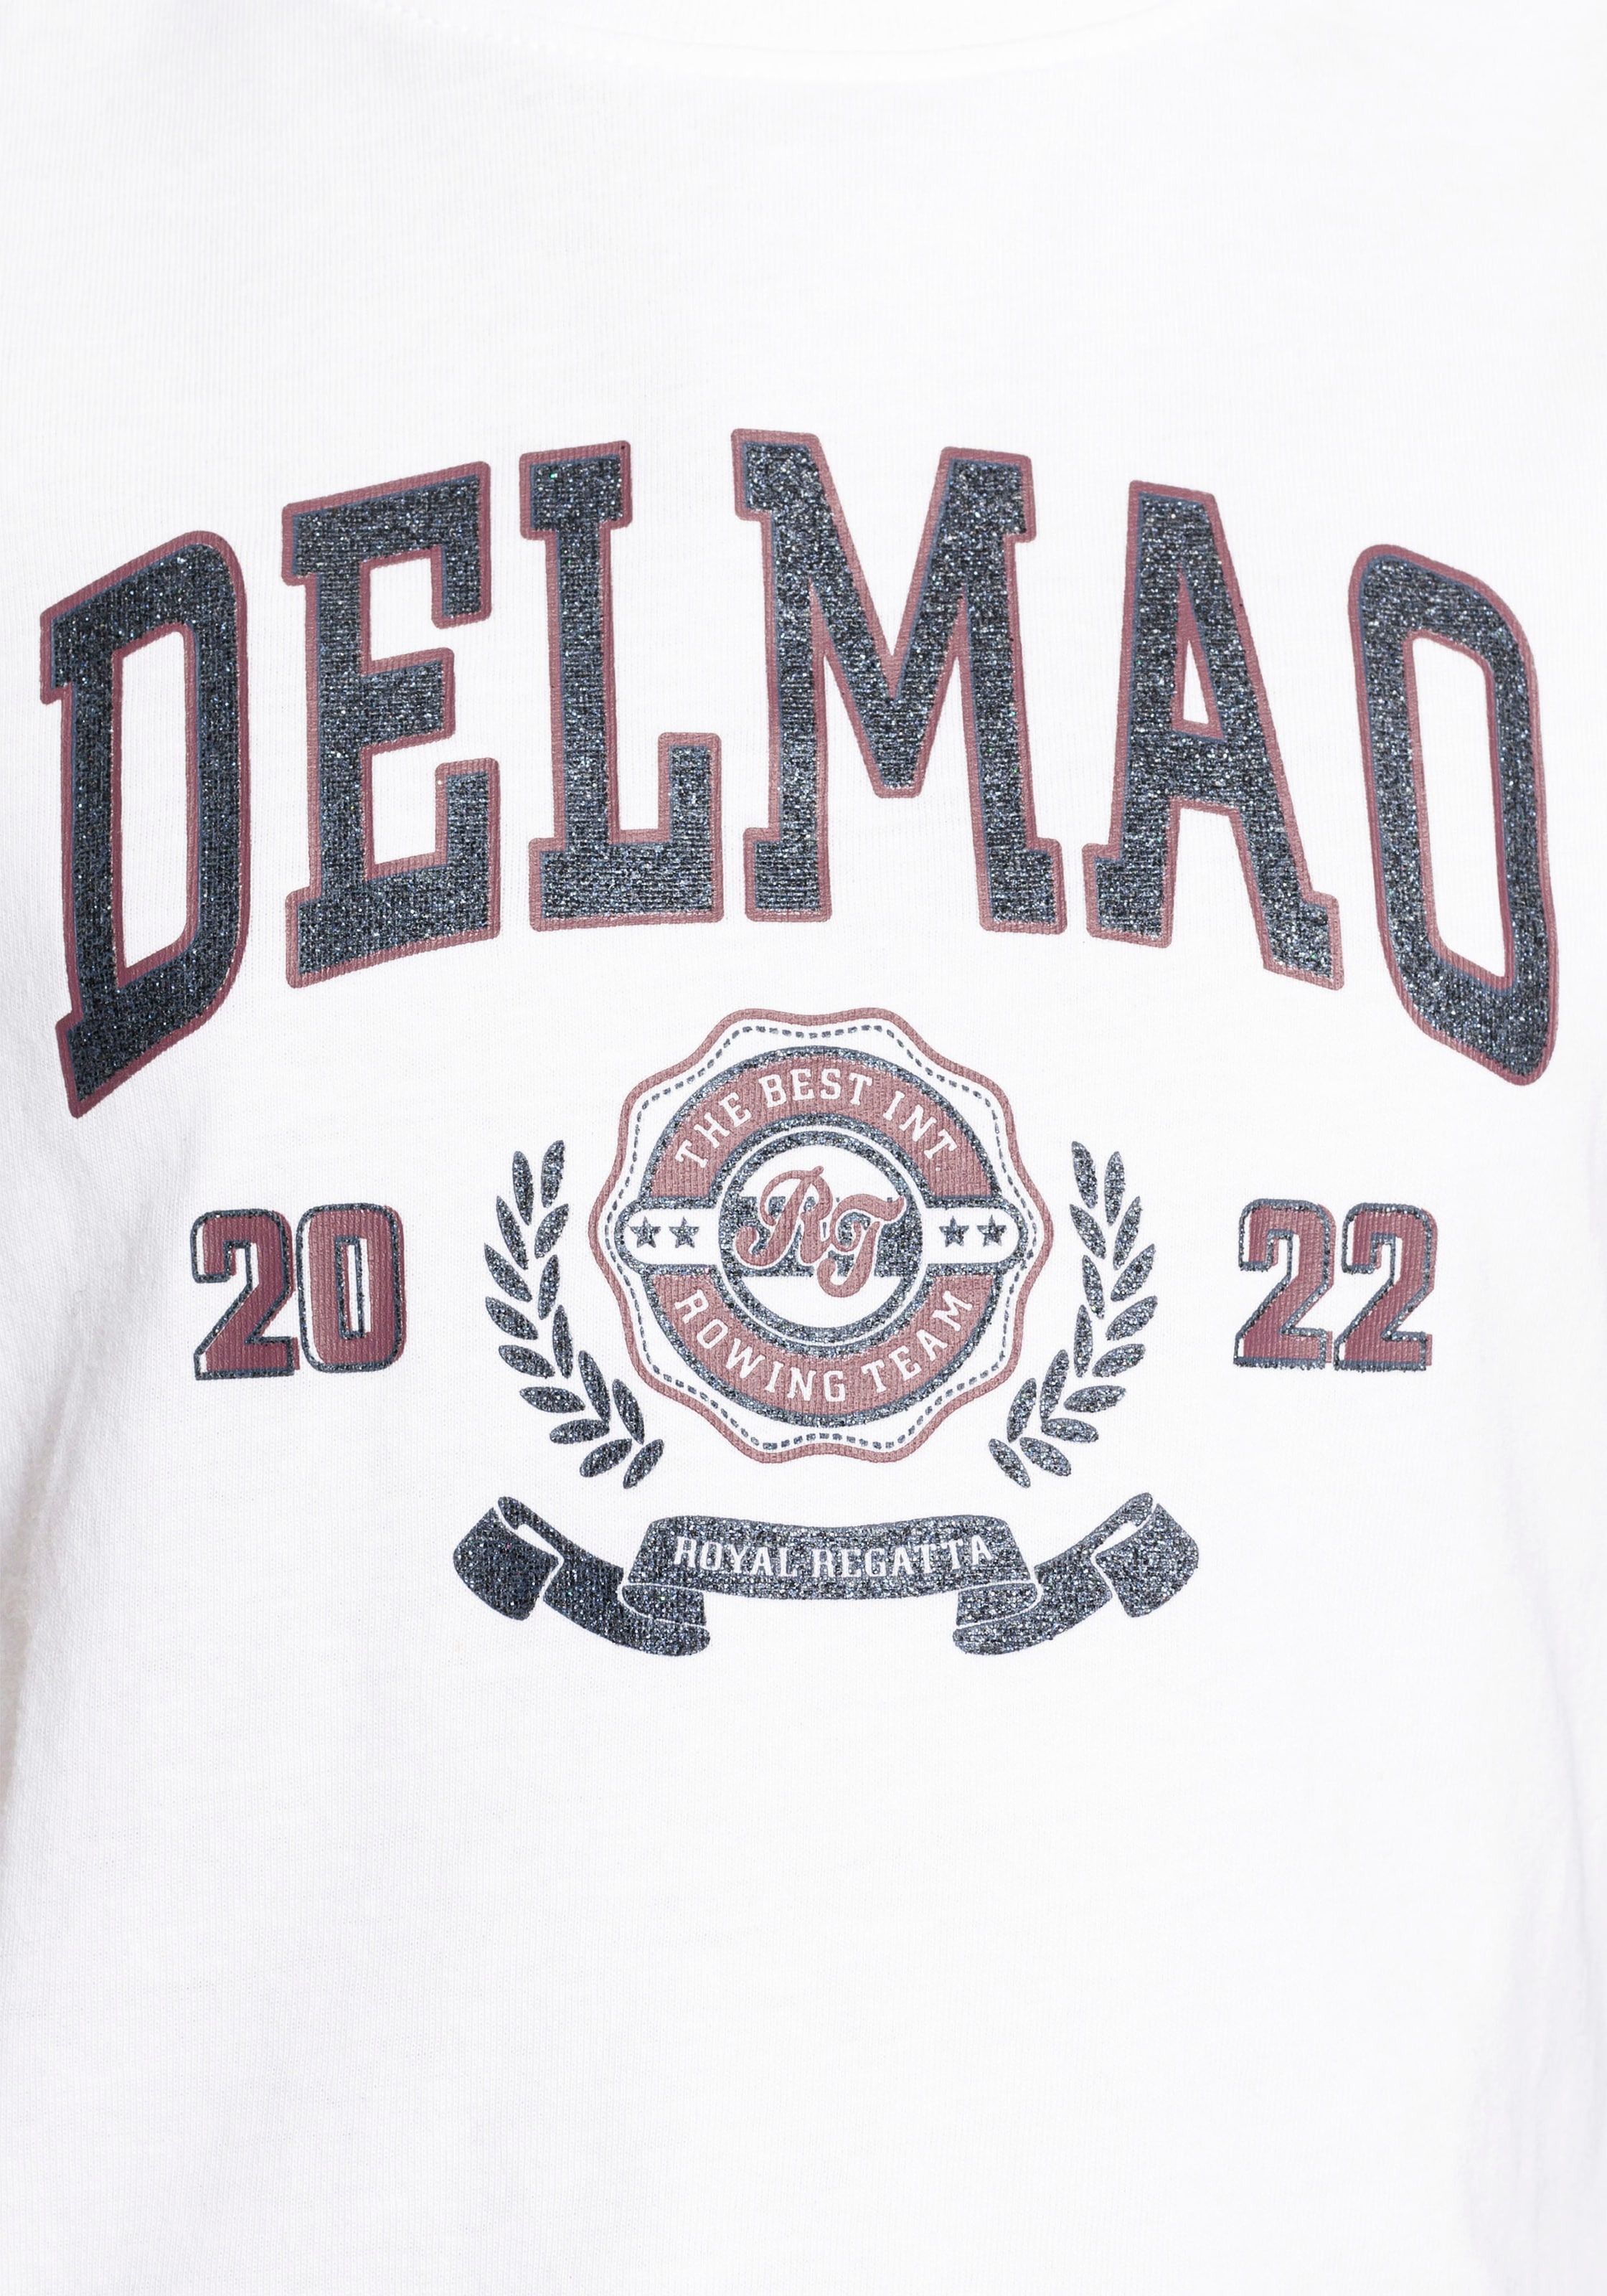 DELMAO T-Shirt »für Mädchen«, mit großem Delmao-Glitzer-Print